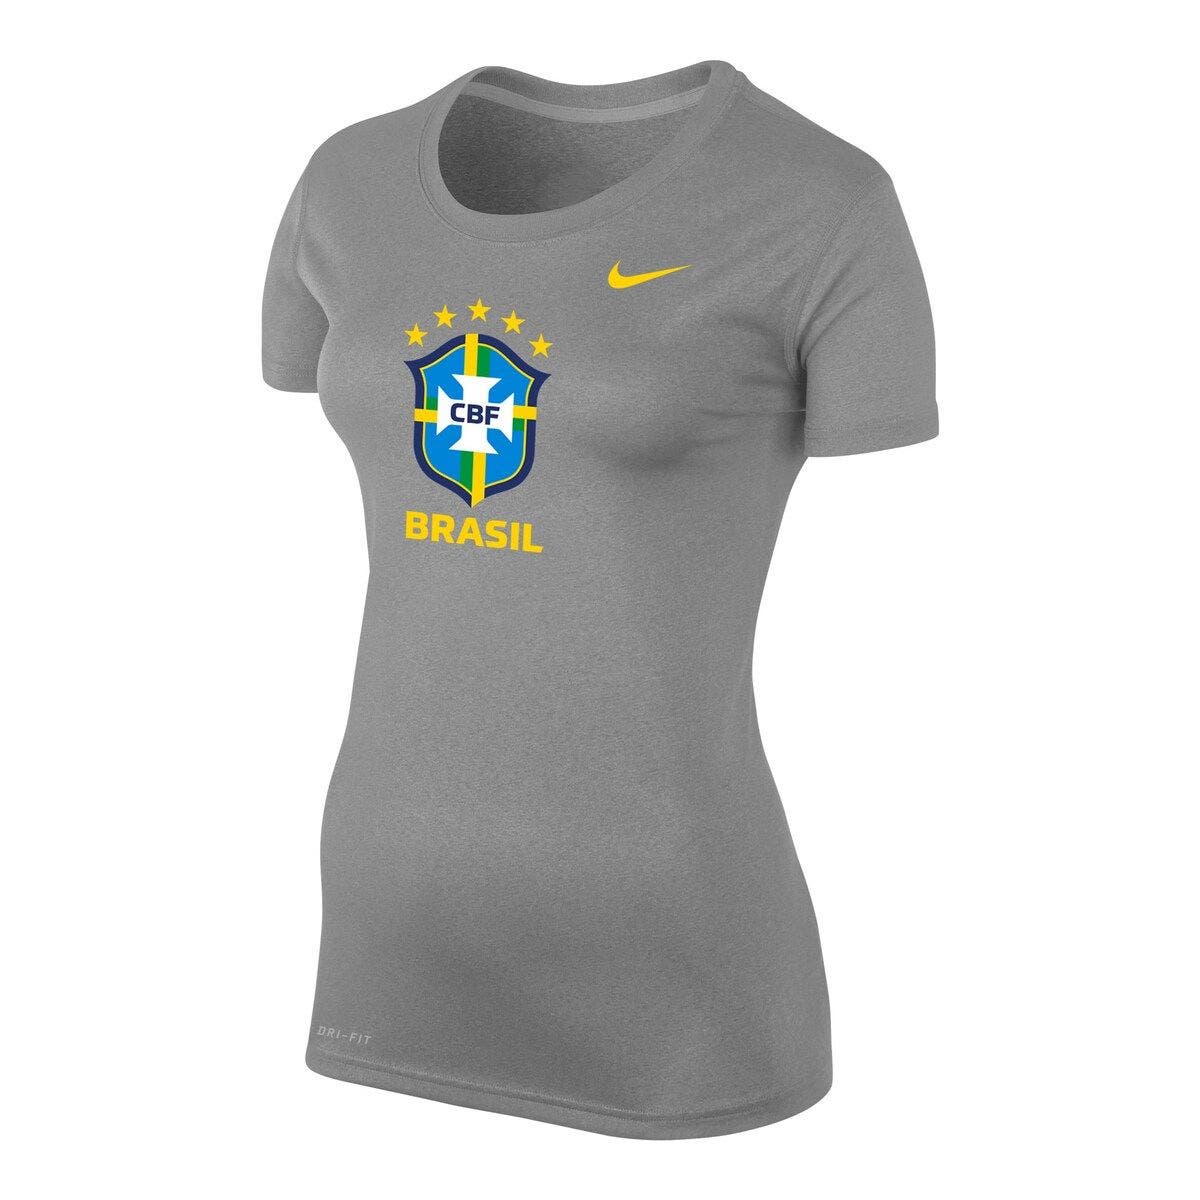 brazil national team soccer jersey women